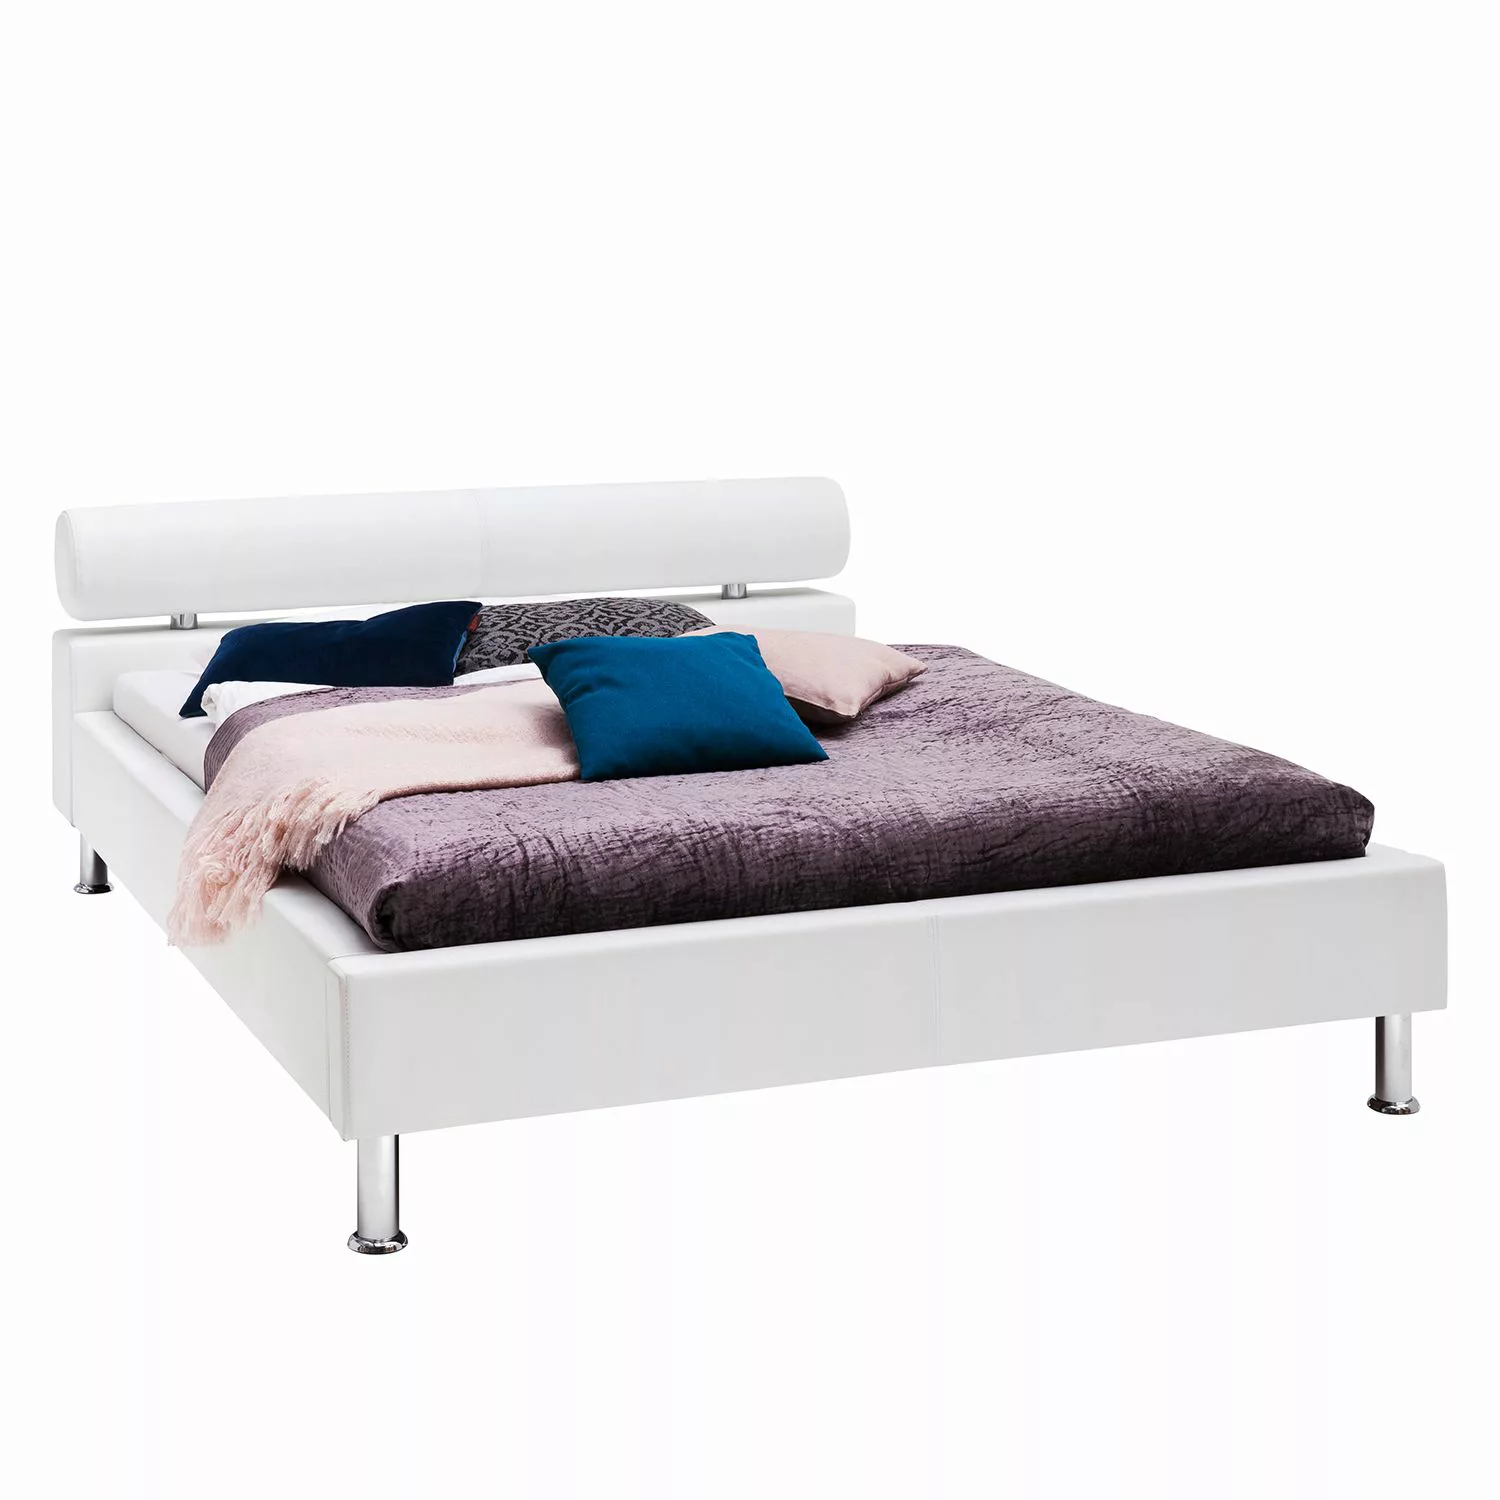 Polsterbett - weiß - 136 cm - 73 cm - 229 cm - Betten > Einzelbetten - Möbe günstig online kaufen